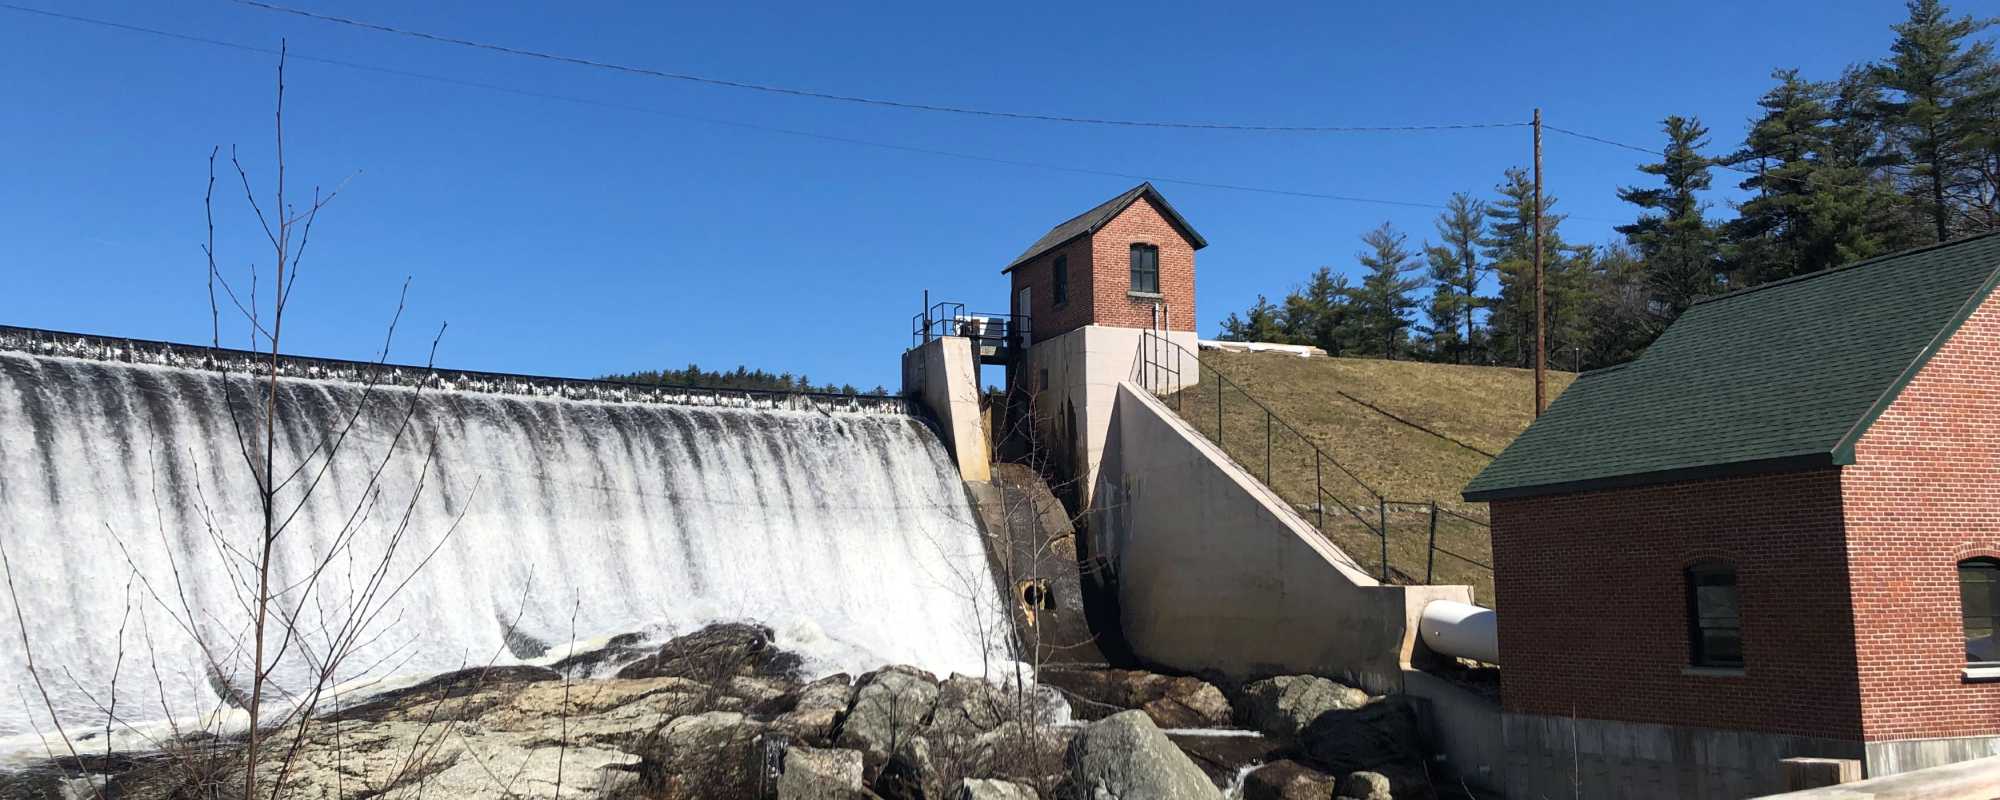 Whitman Hydro Facility River Dam